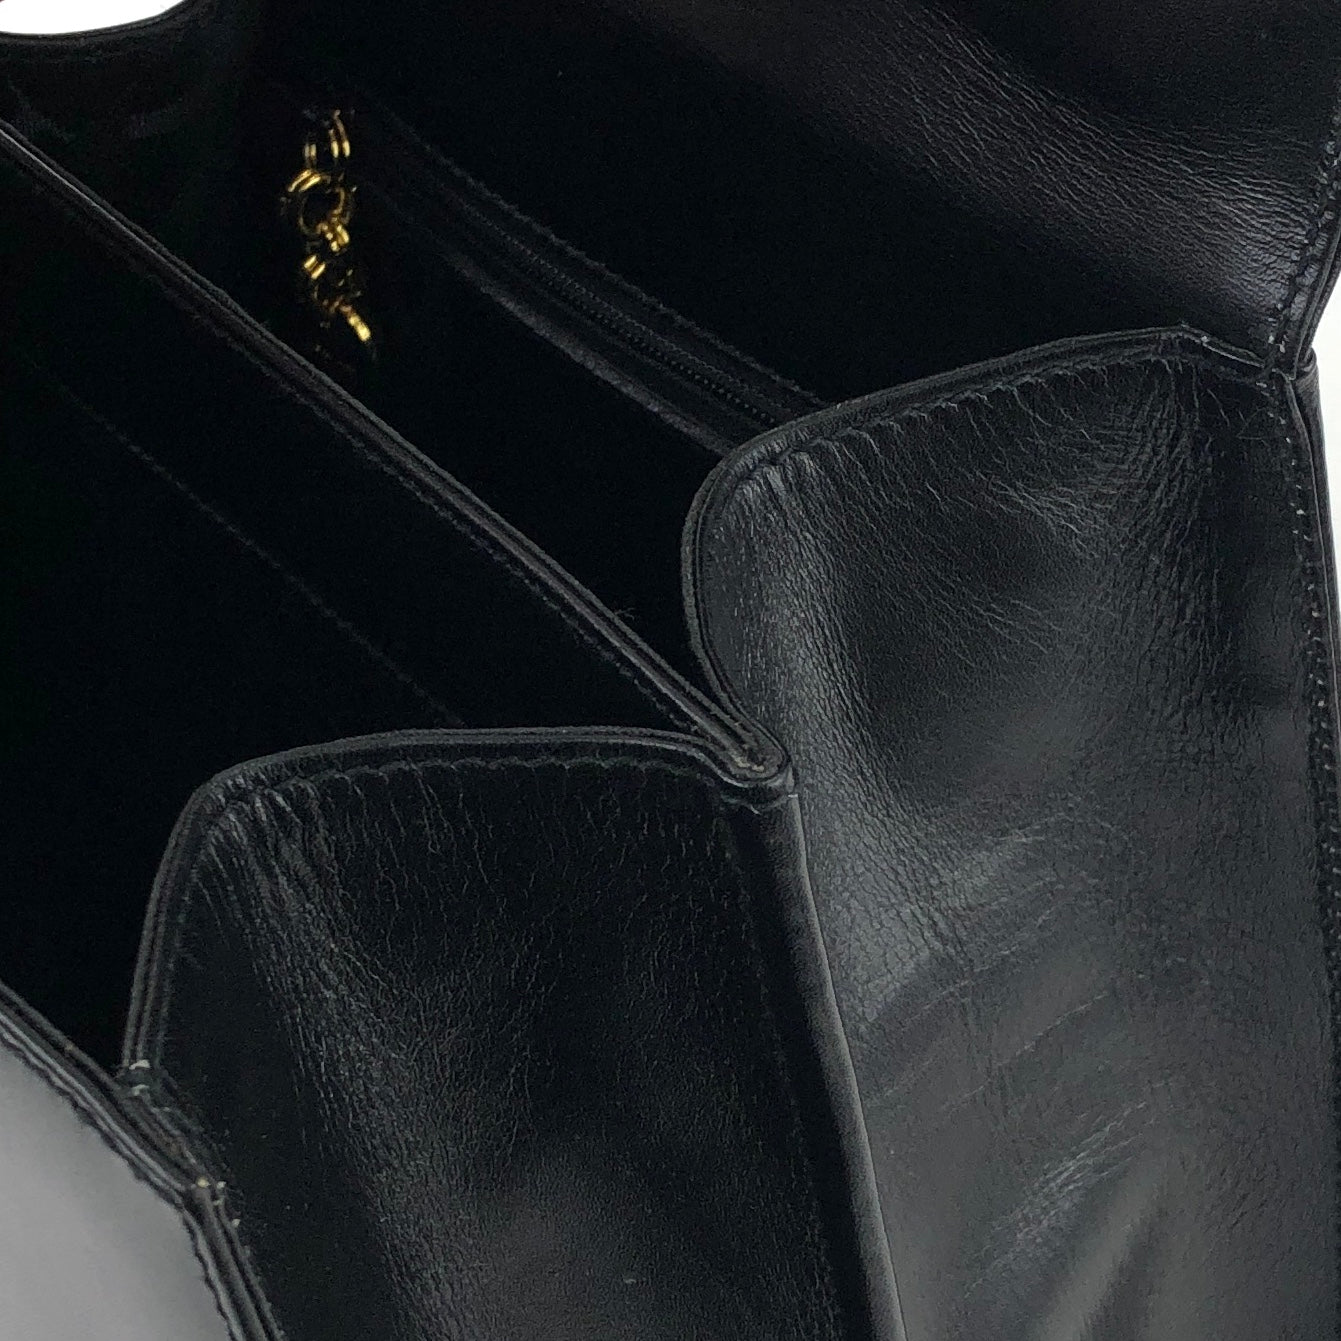 Salvatore Ferragamo Gancini 2Way Top handle Handbag Shoulder bag Black Vintage Old 5bnsnc